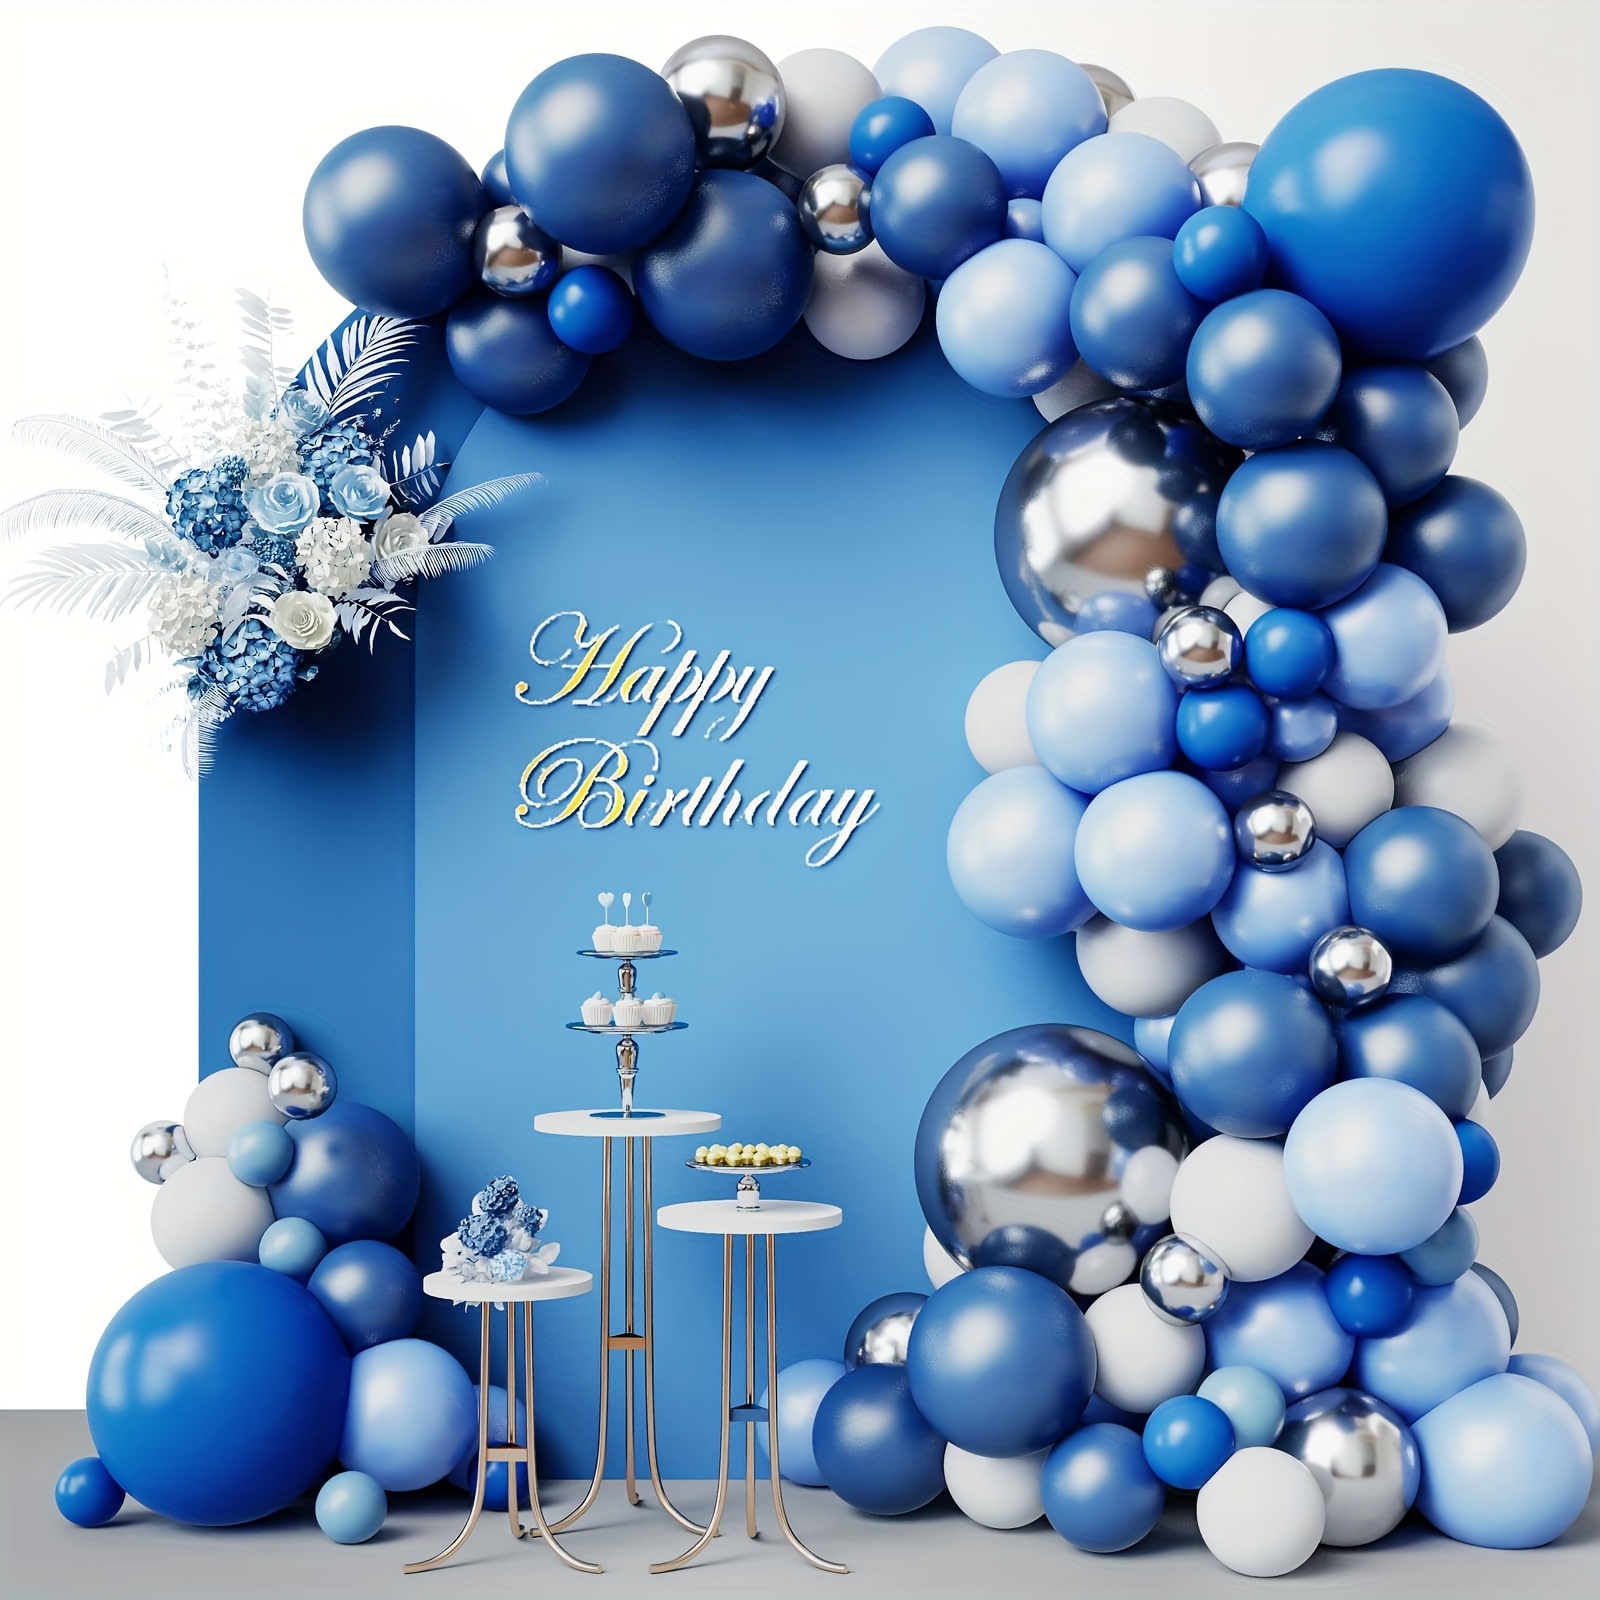 Kit Guirnalda globos azules - Decoración con globos